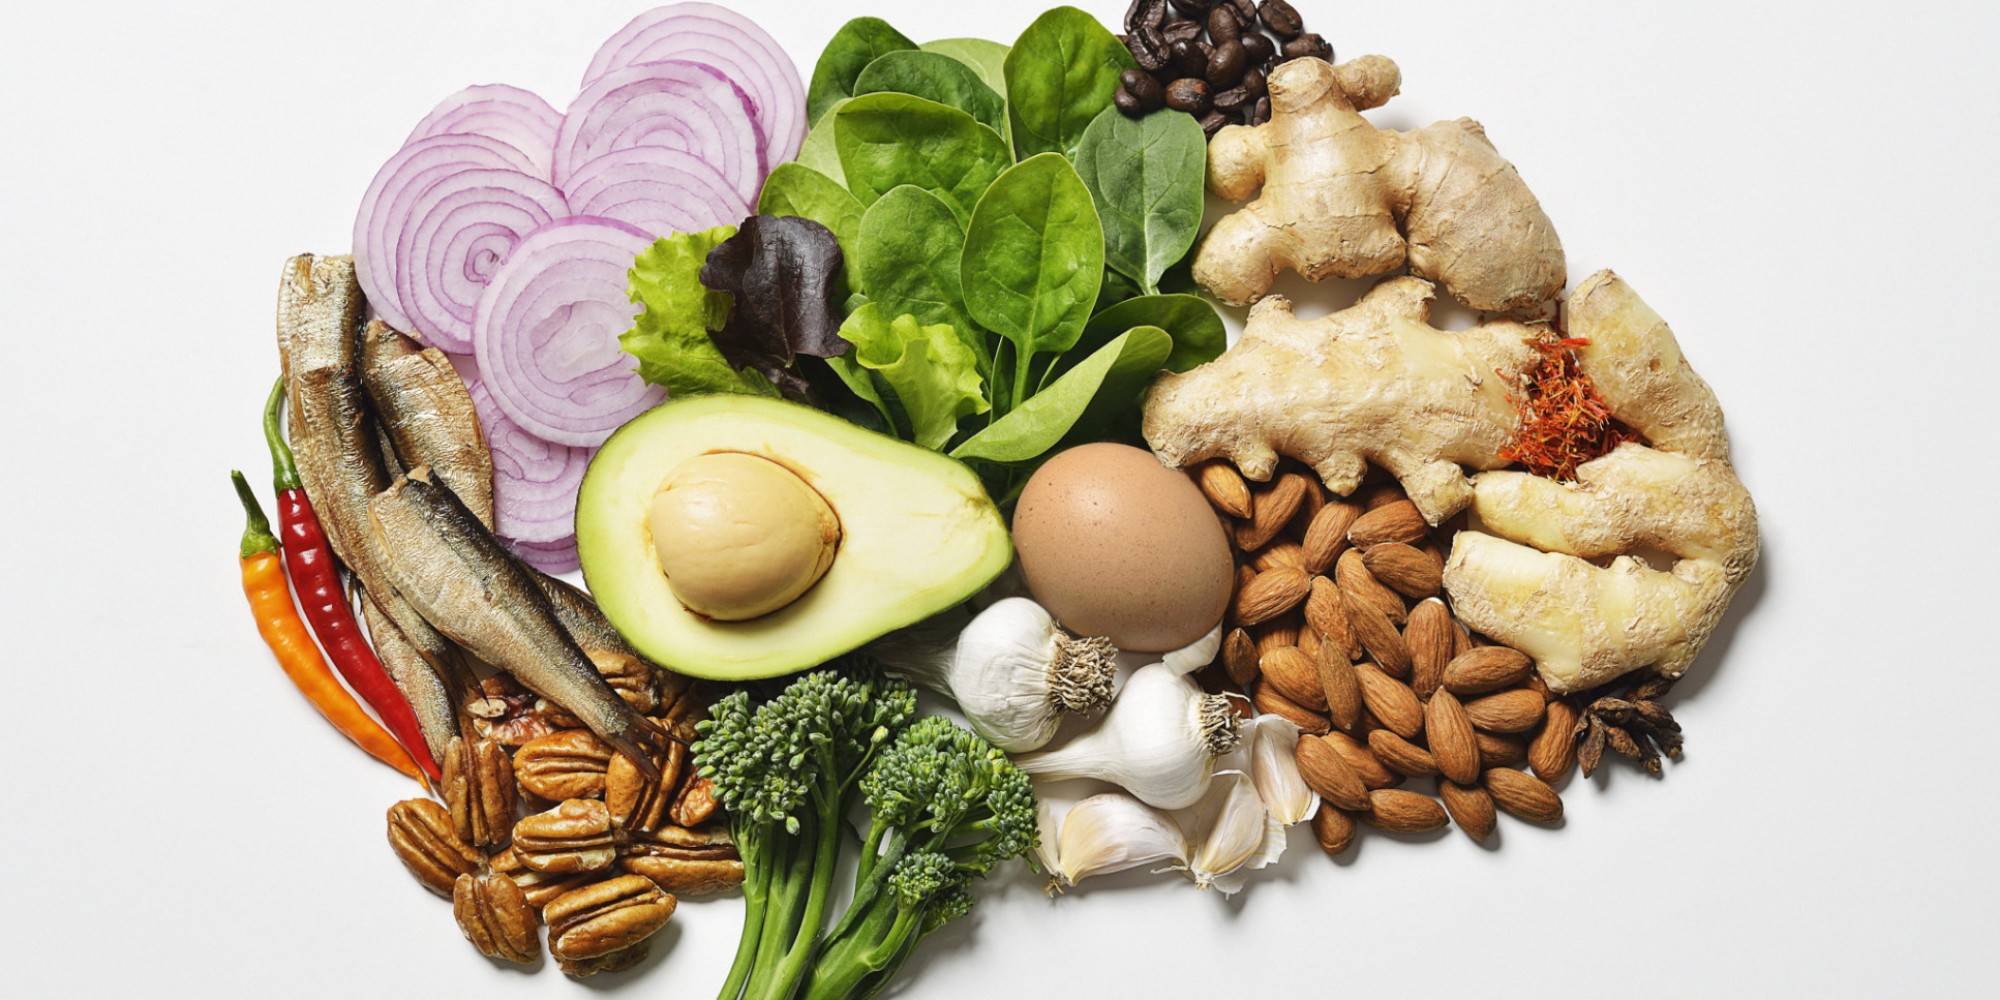 20 самых полезных продуктов питания для головного мозга человека, улучшающих работу нейронов и клеток